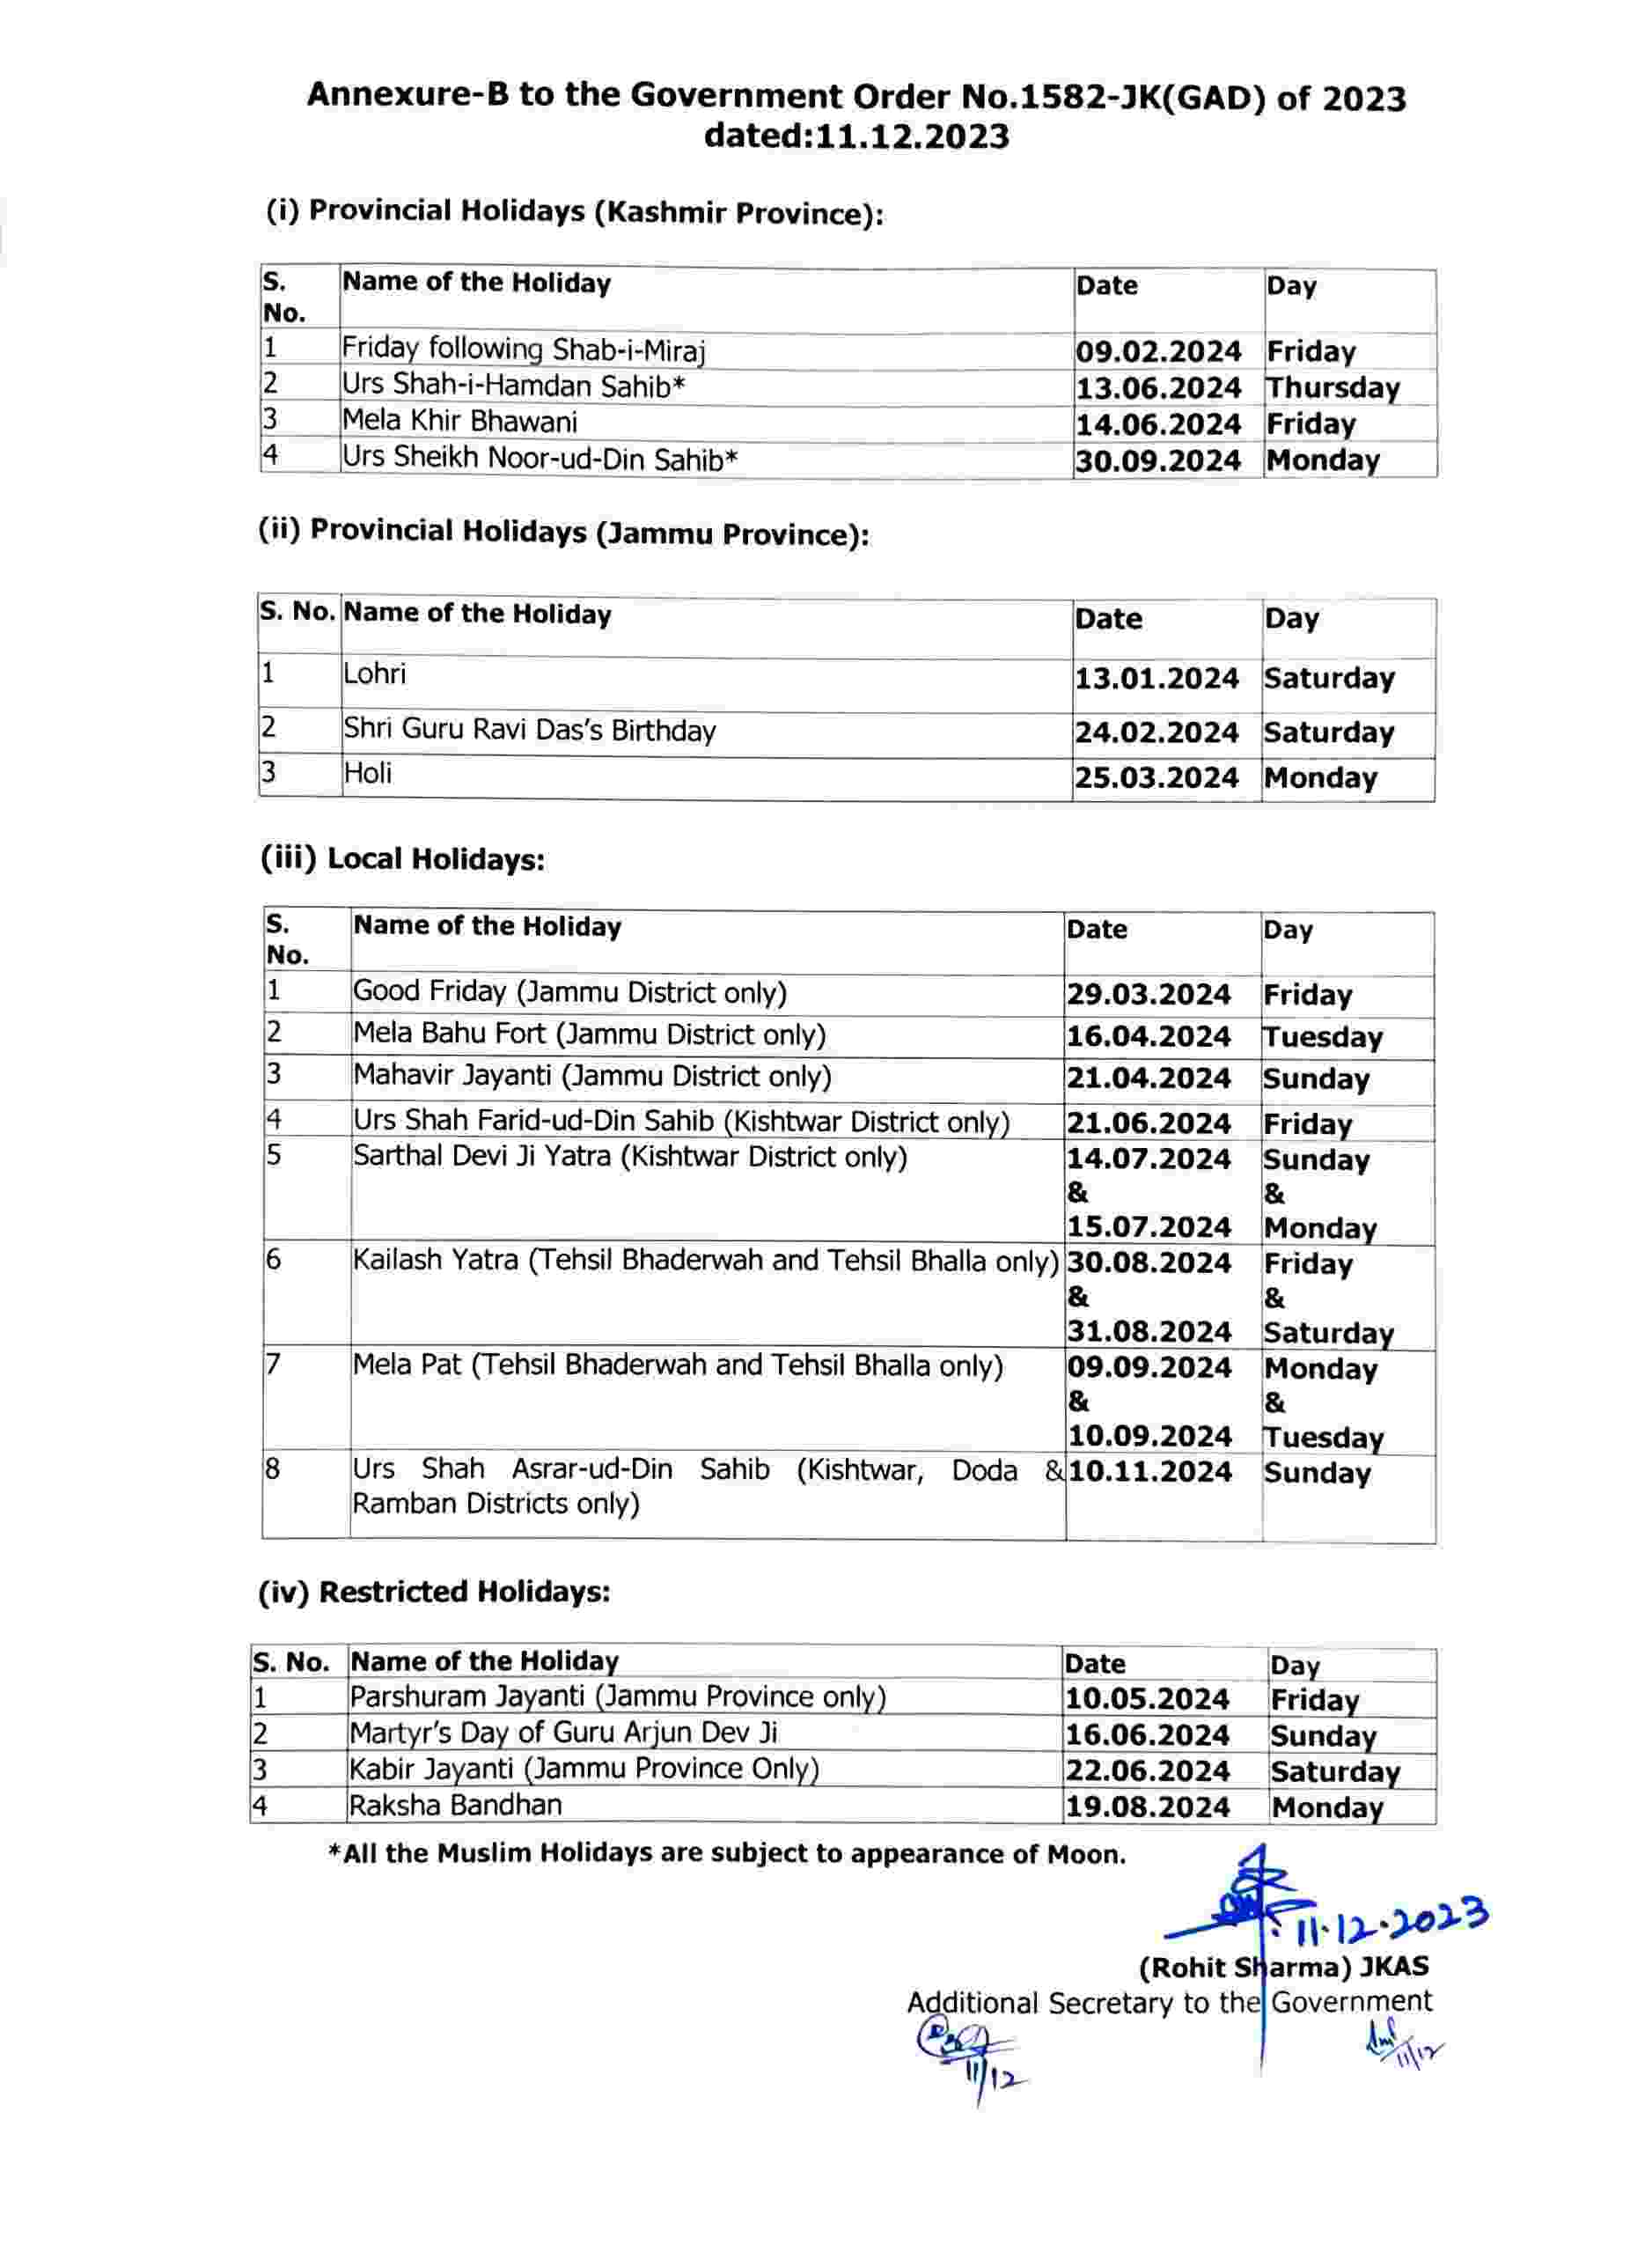 List of Holidays in 2024 Jammu Kashmir Holidays Calendar 2024 JK News